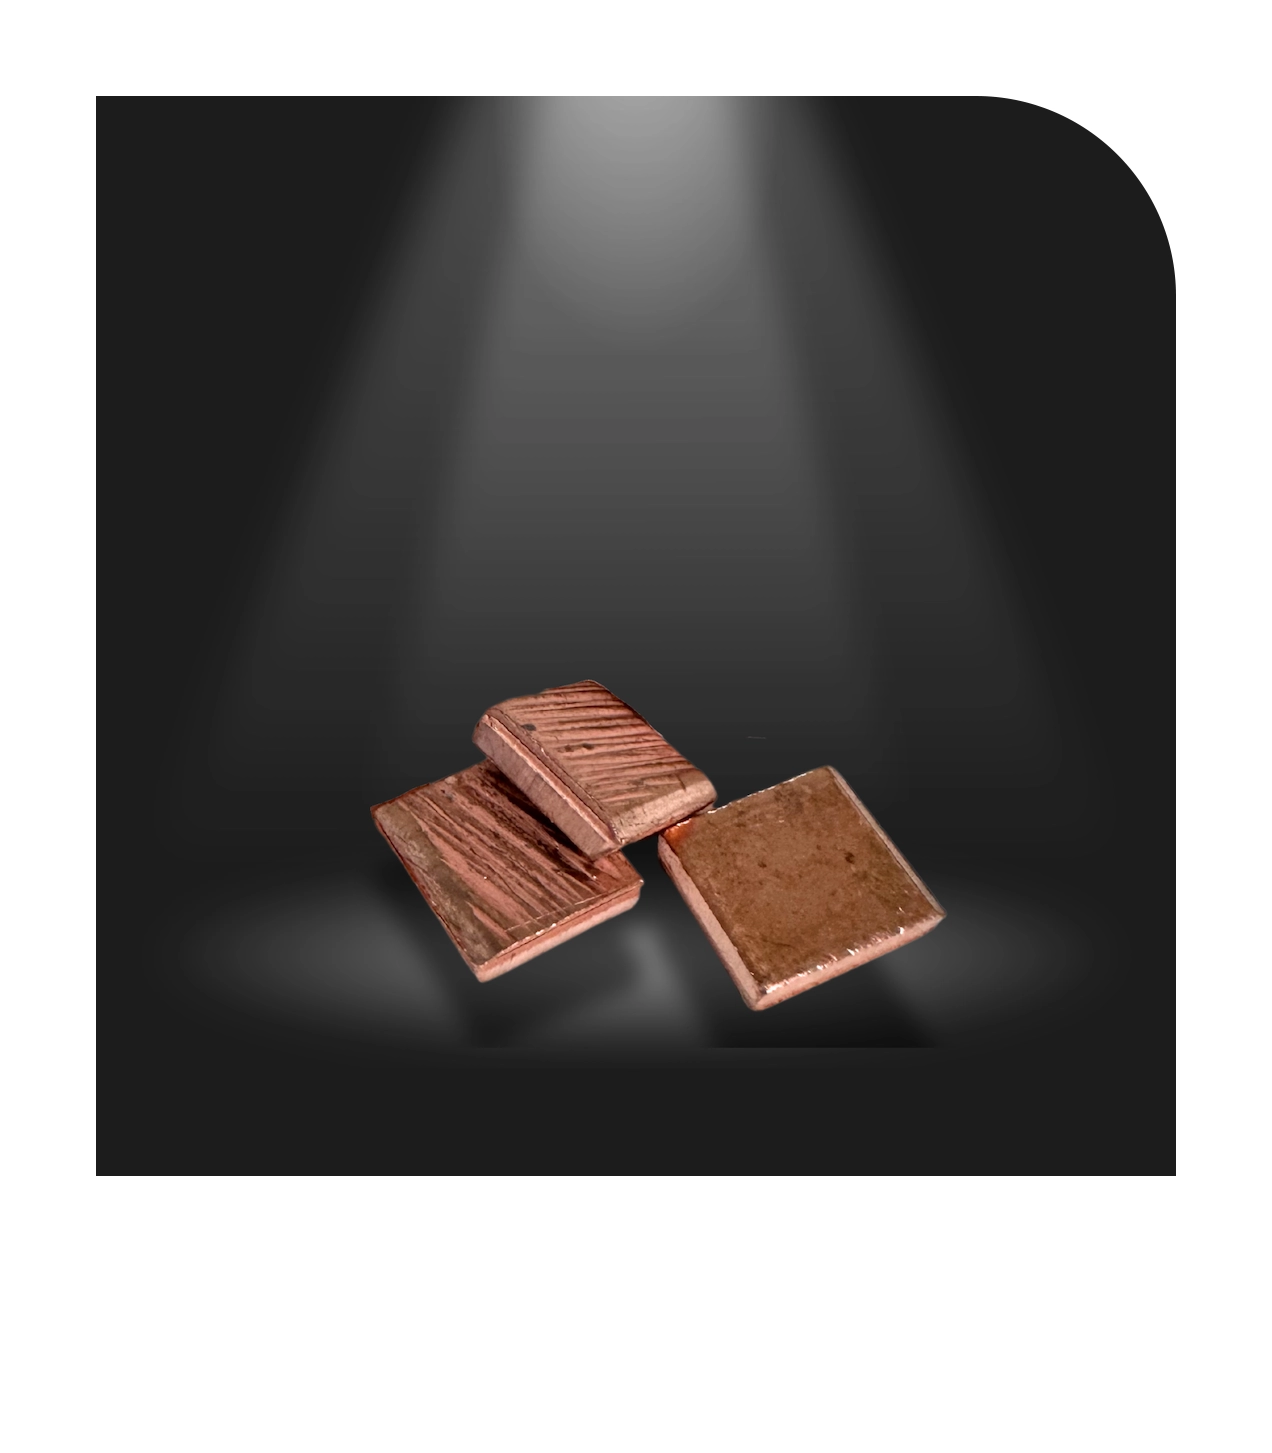 Kupfer Squares 4x4 (EL) sind Kupferanoden mit mindestens 99,99% Reinheit, geeignet für cyanidbasierte Kupferbäder, sorgen für bessere Abscheidung und Verteilung in Anodenkörben durch größere Oberfläche als Kupferkathoden.